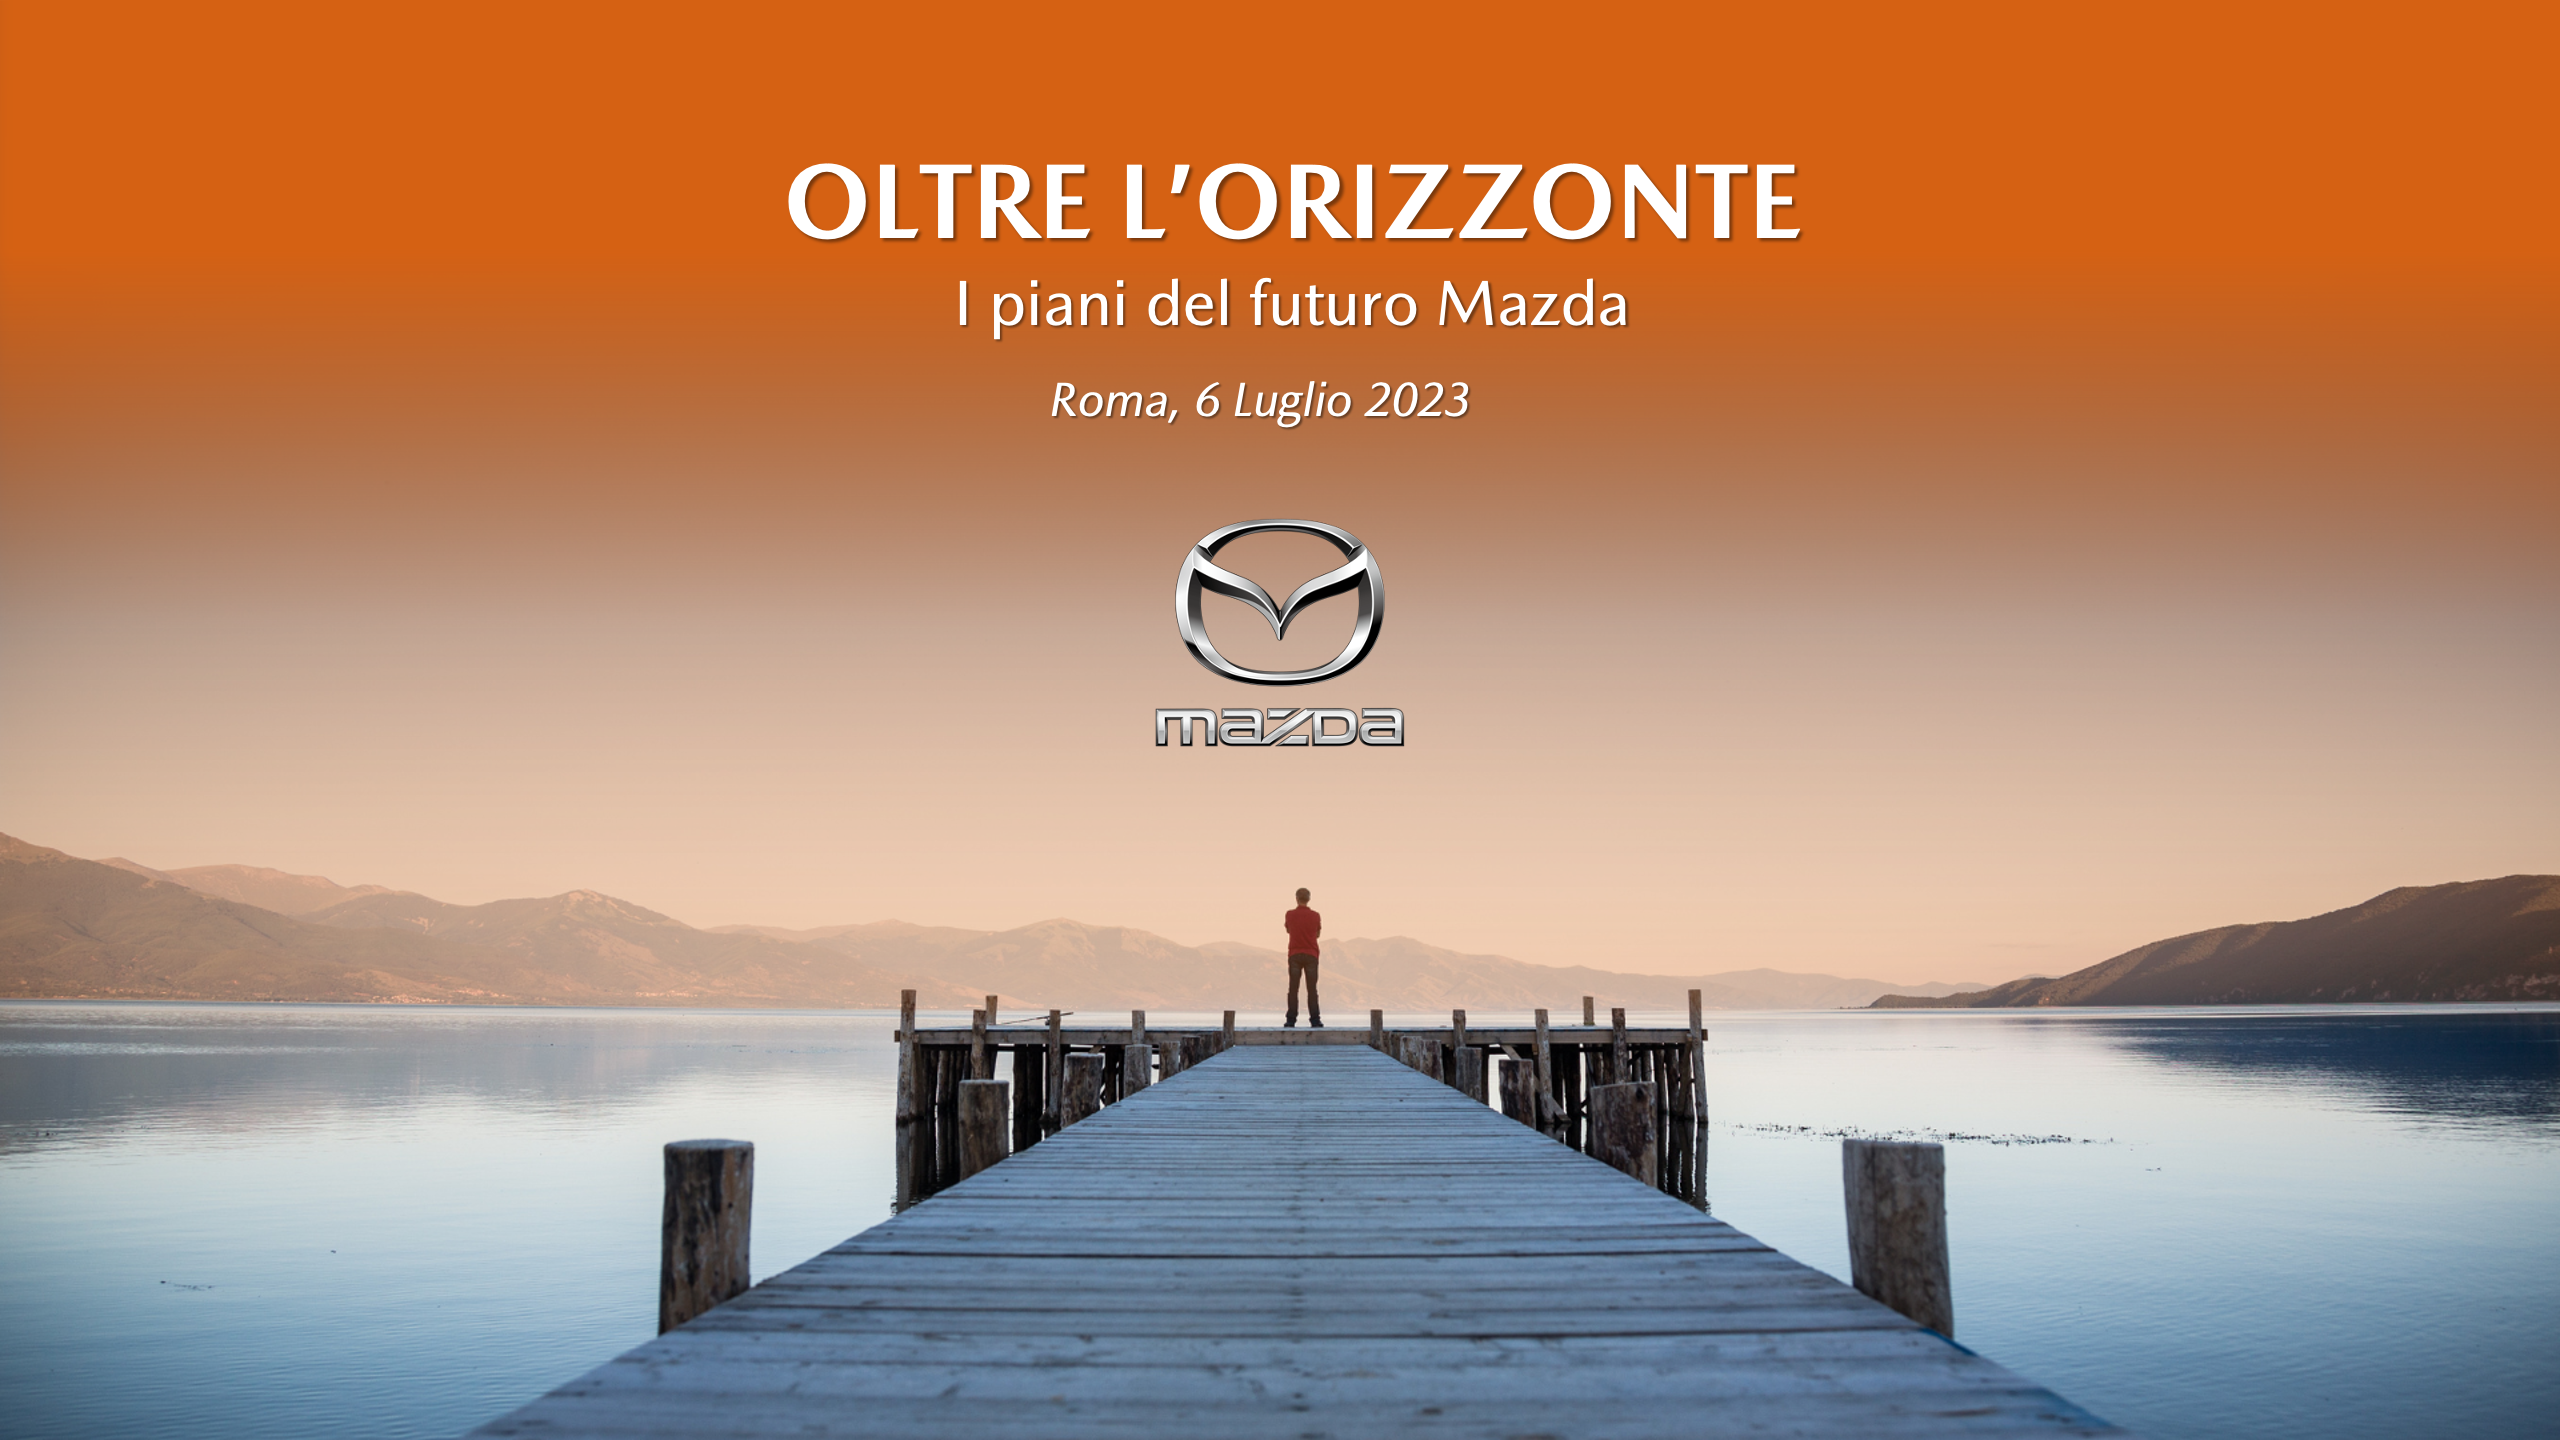 Oltre l'orizzonte - I piani del futuro Mazda cover